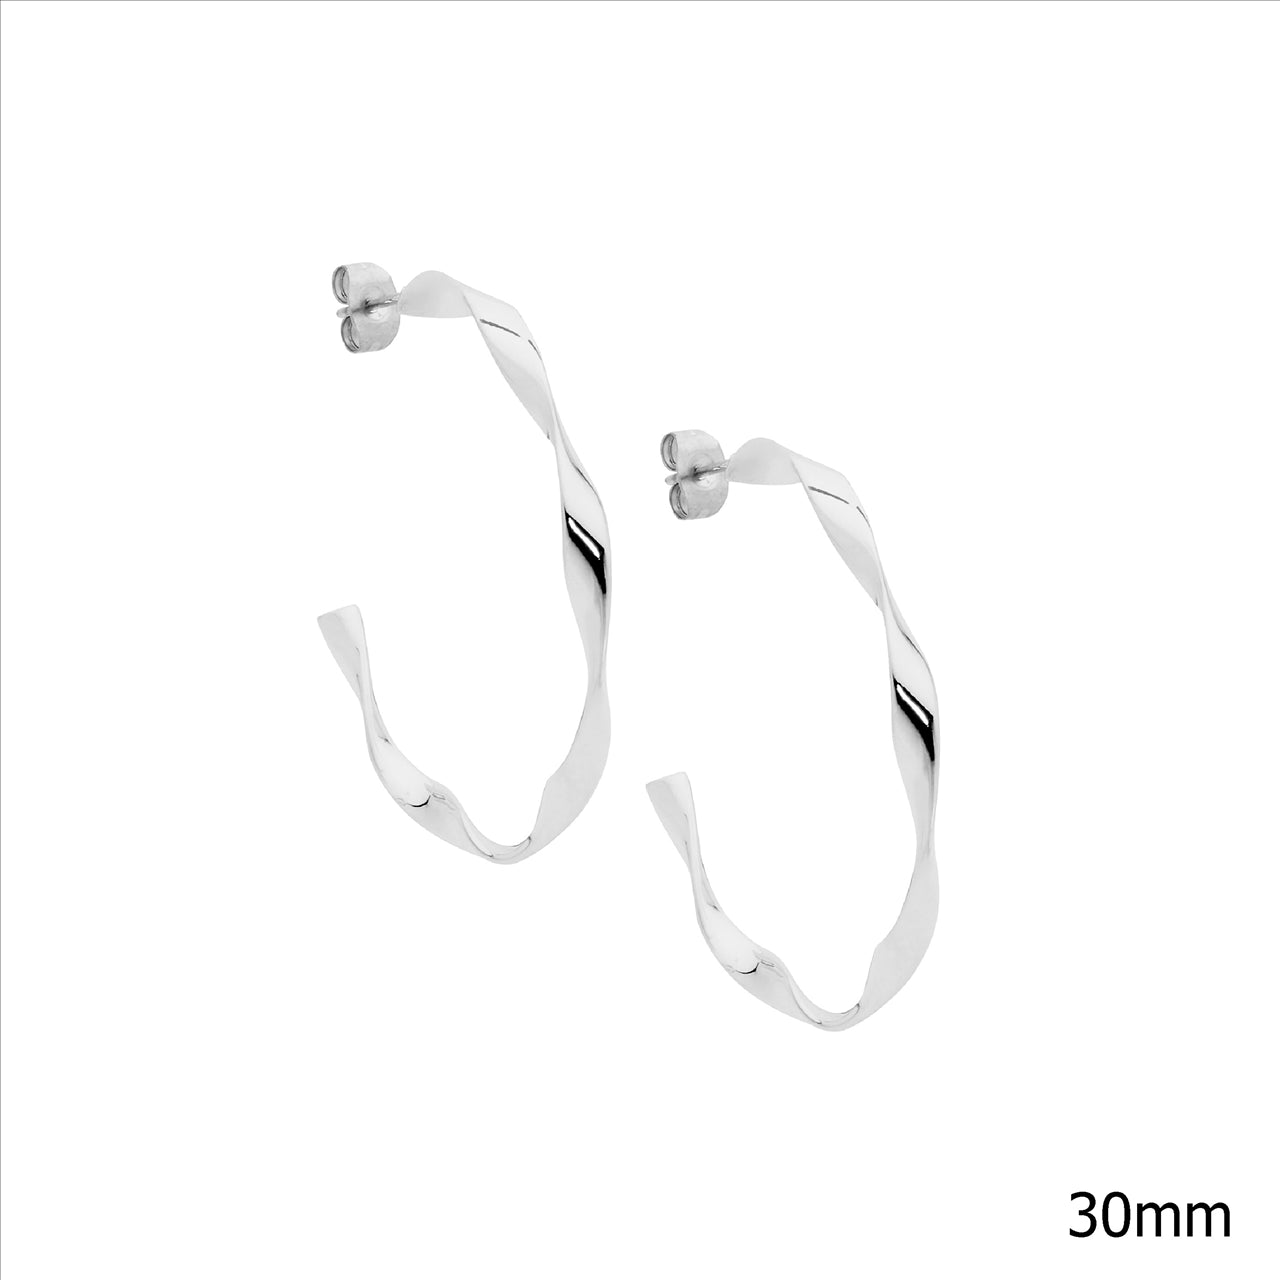 Stainless Steel 3cm Twist Hoop Earrings